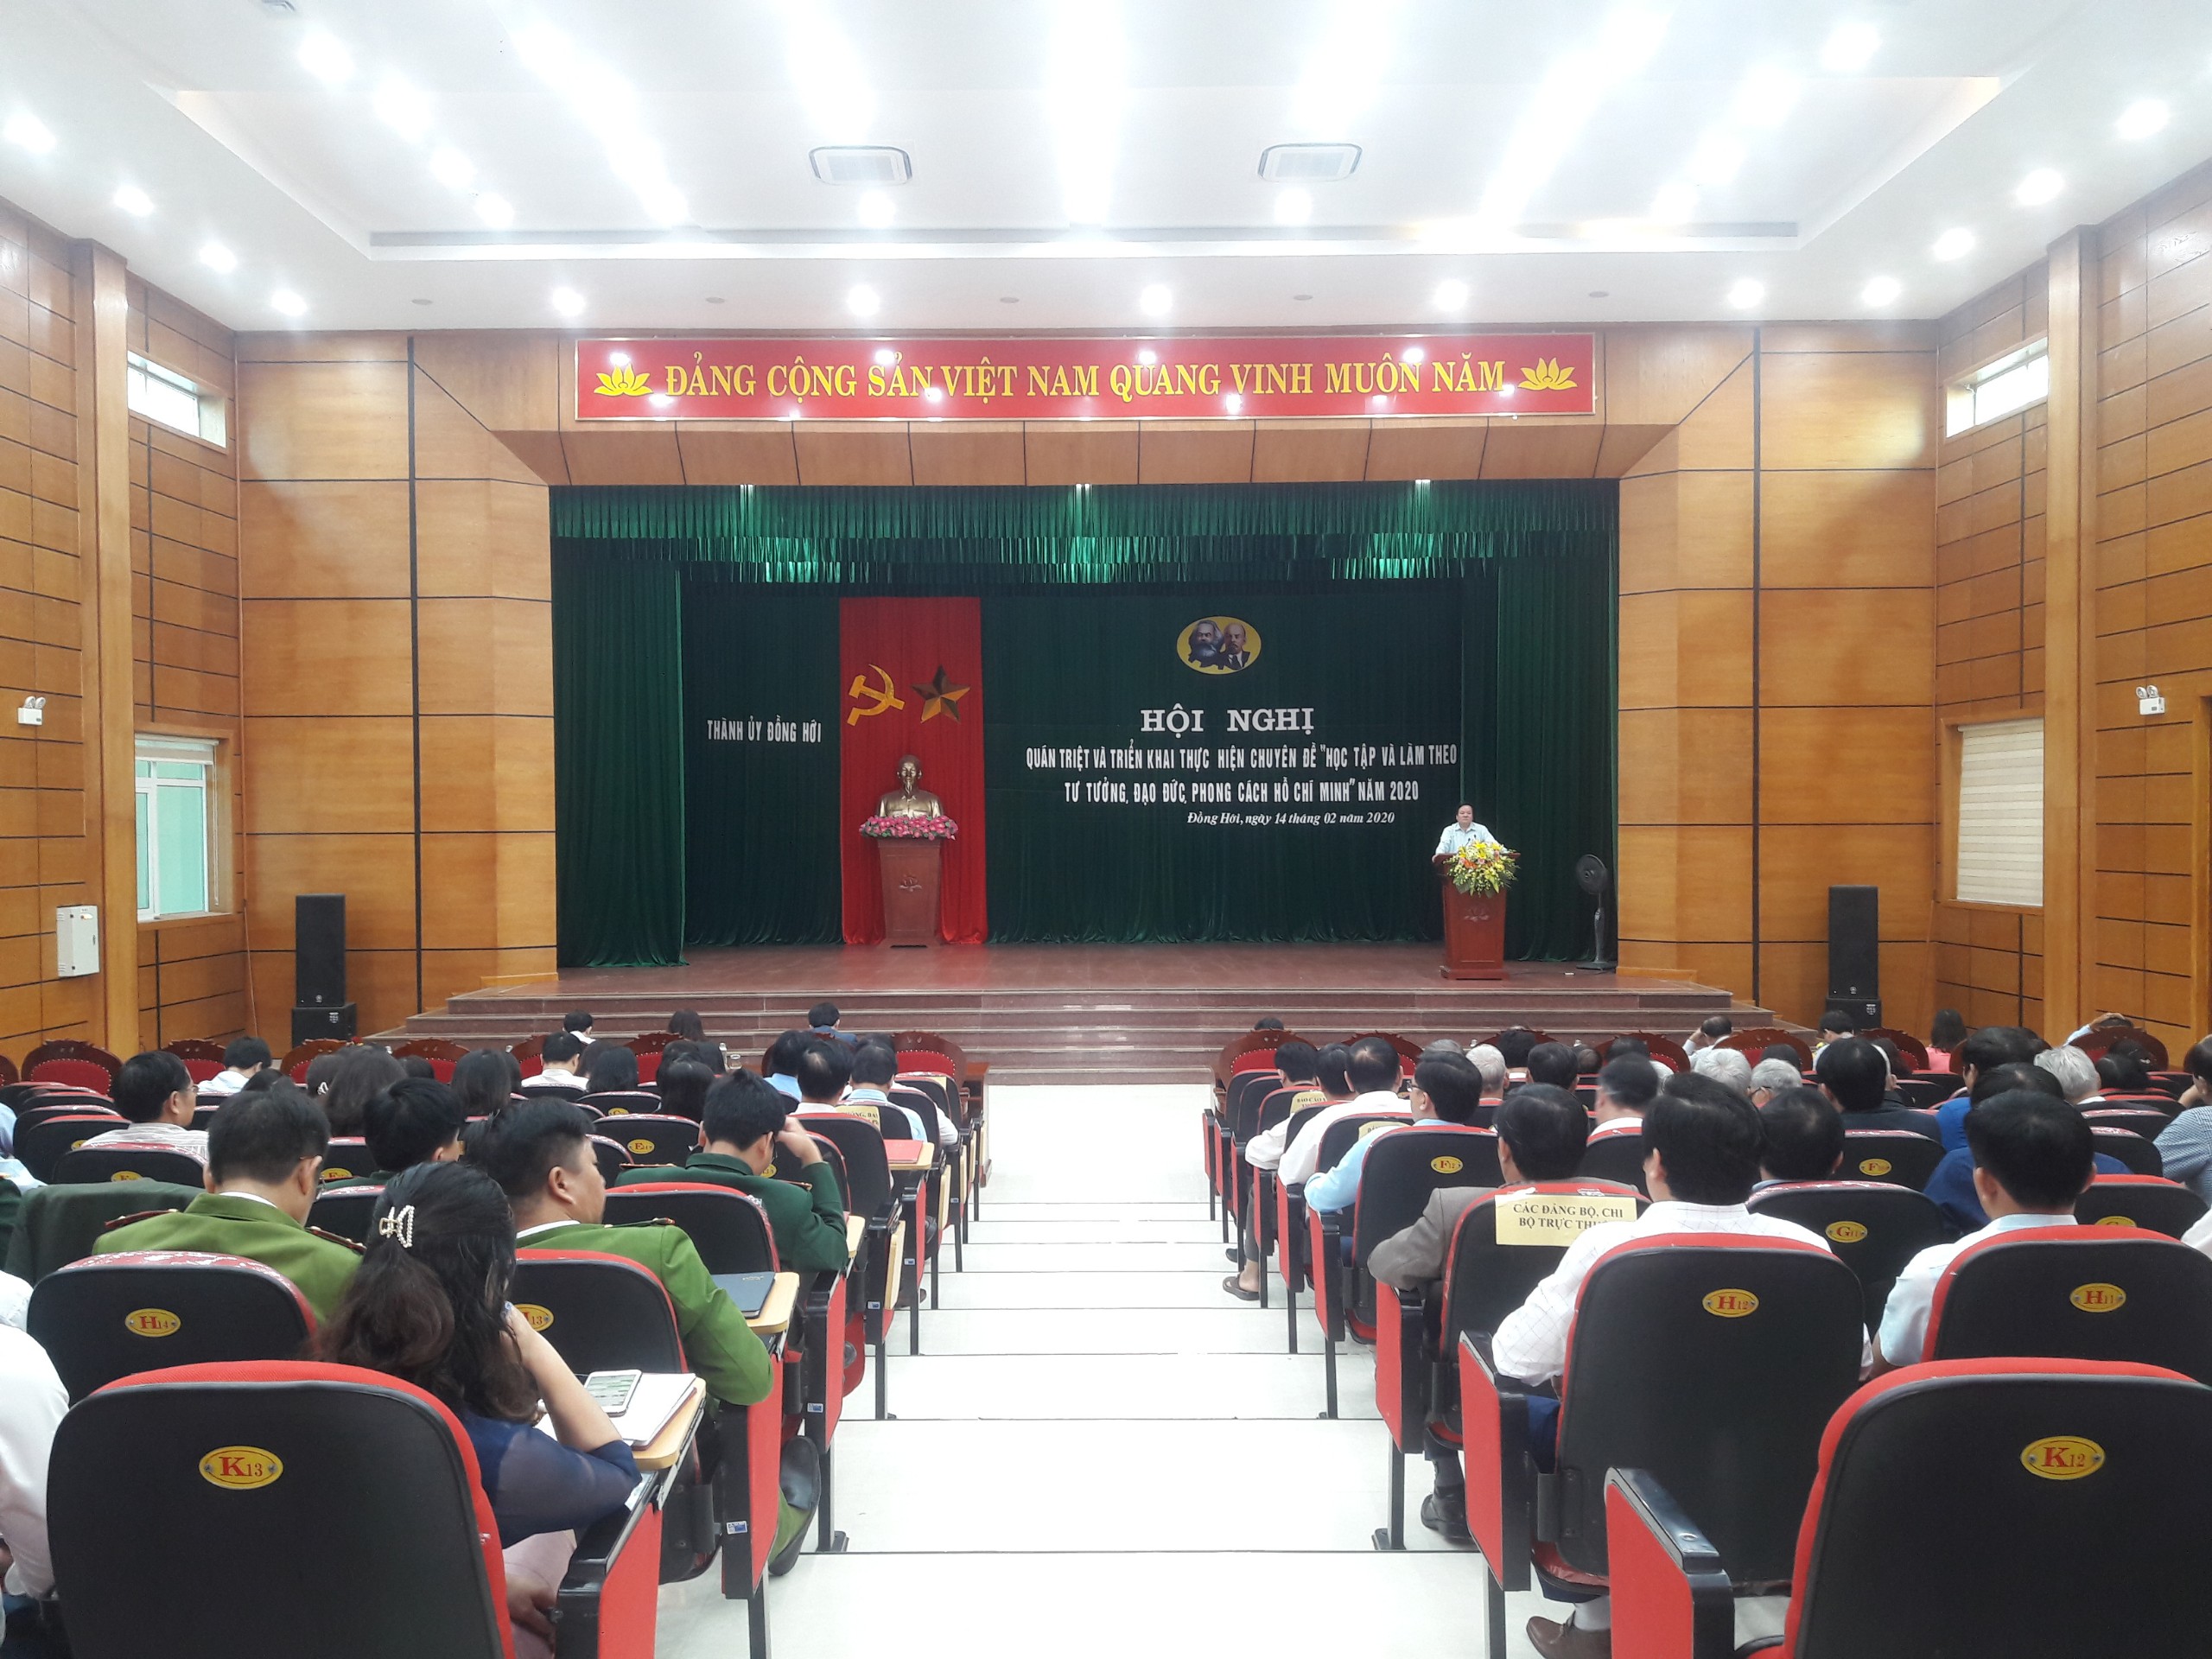 Thành ủy Đồng Hới đã tổ chức hội nghị quán triệt và triển khai thực hiện chuyên đề “Học tập và làm theo tư tưởng, đạo đức, phong cách Hồ Chí Minh” năm 2020